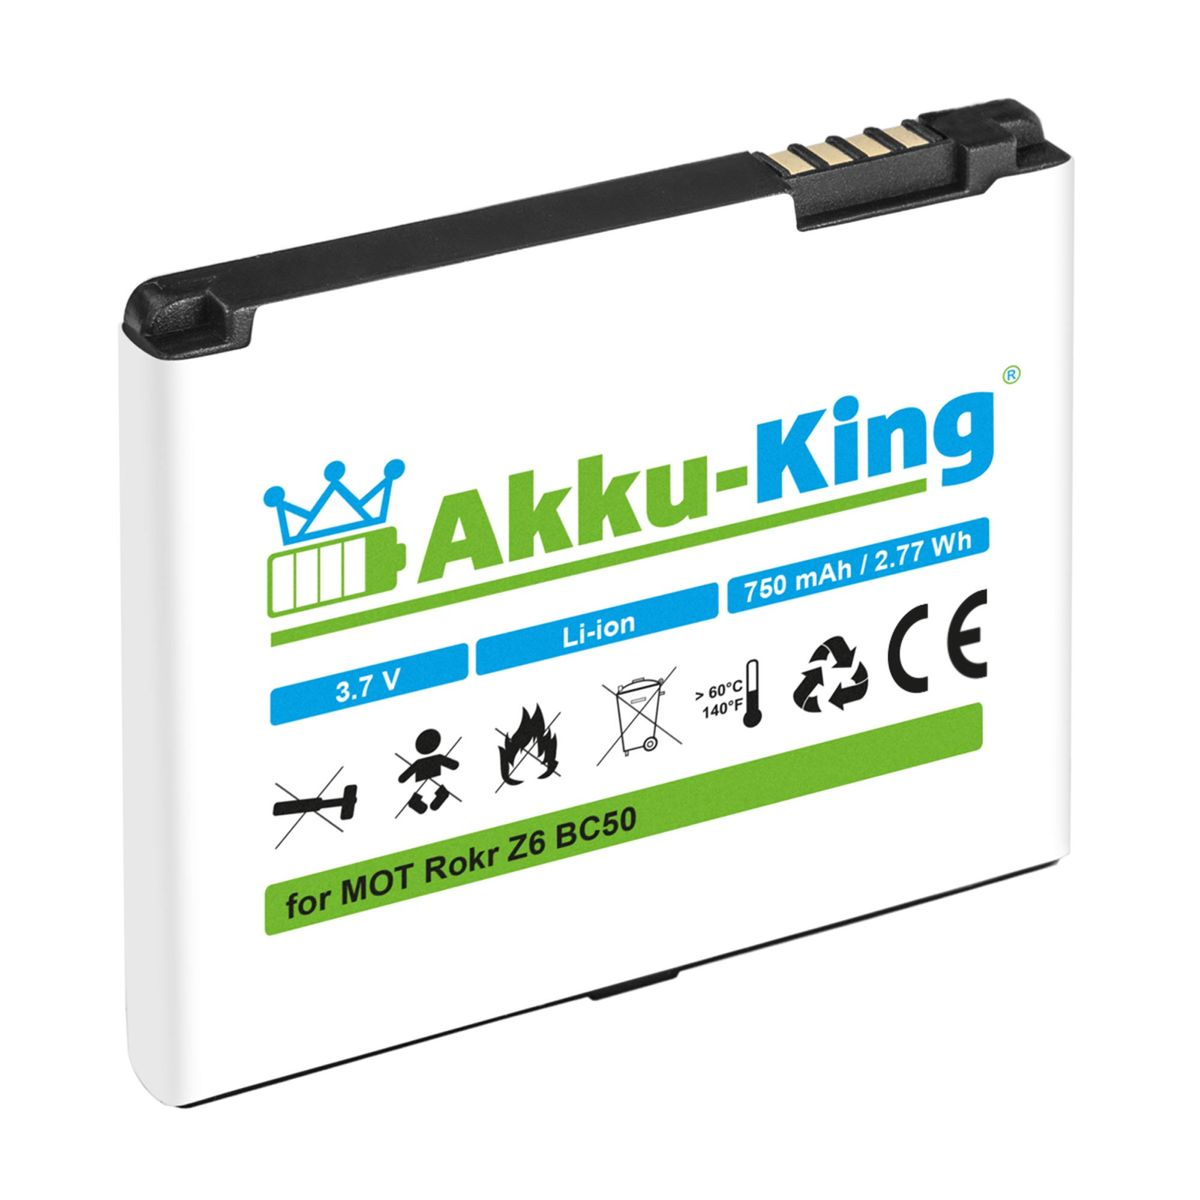 mit 750mAh Volt, Li-Ion Handy-Akku, Akku BC50 Motorola AKKU-KING kompatibel 3.7